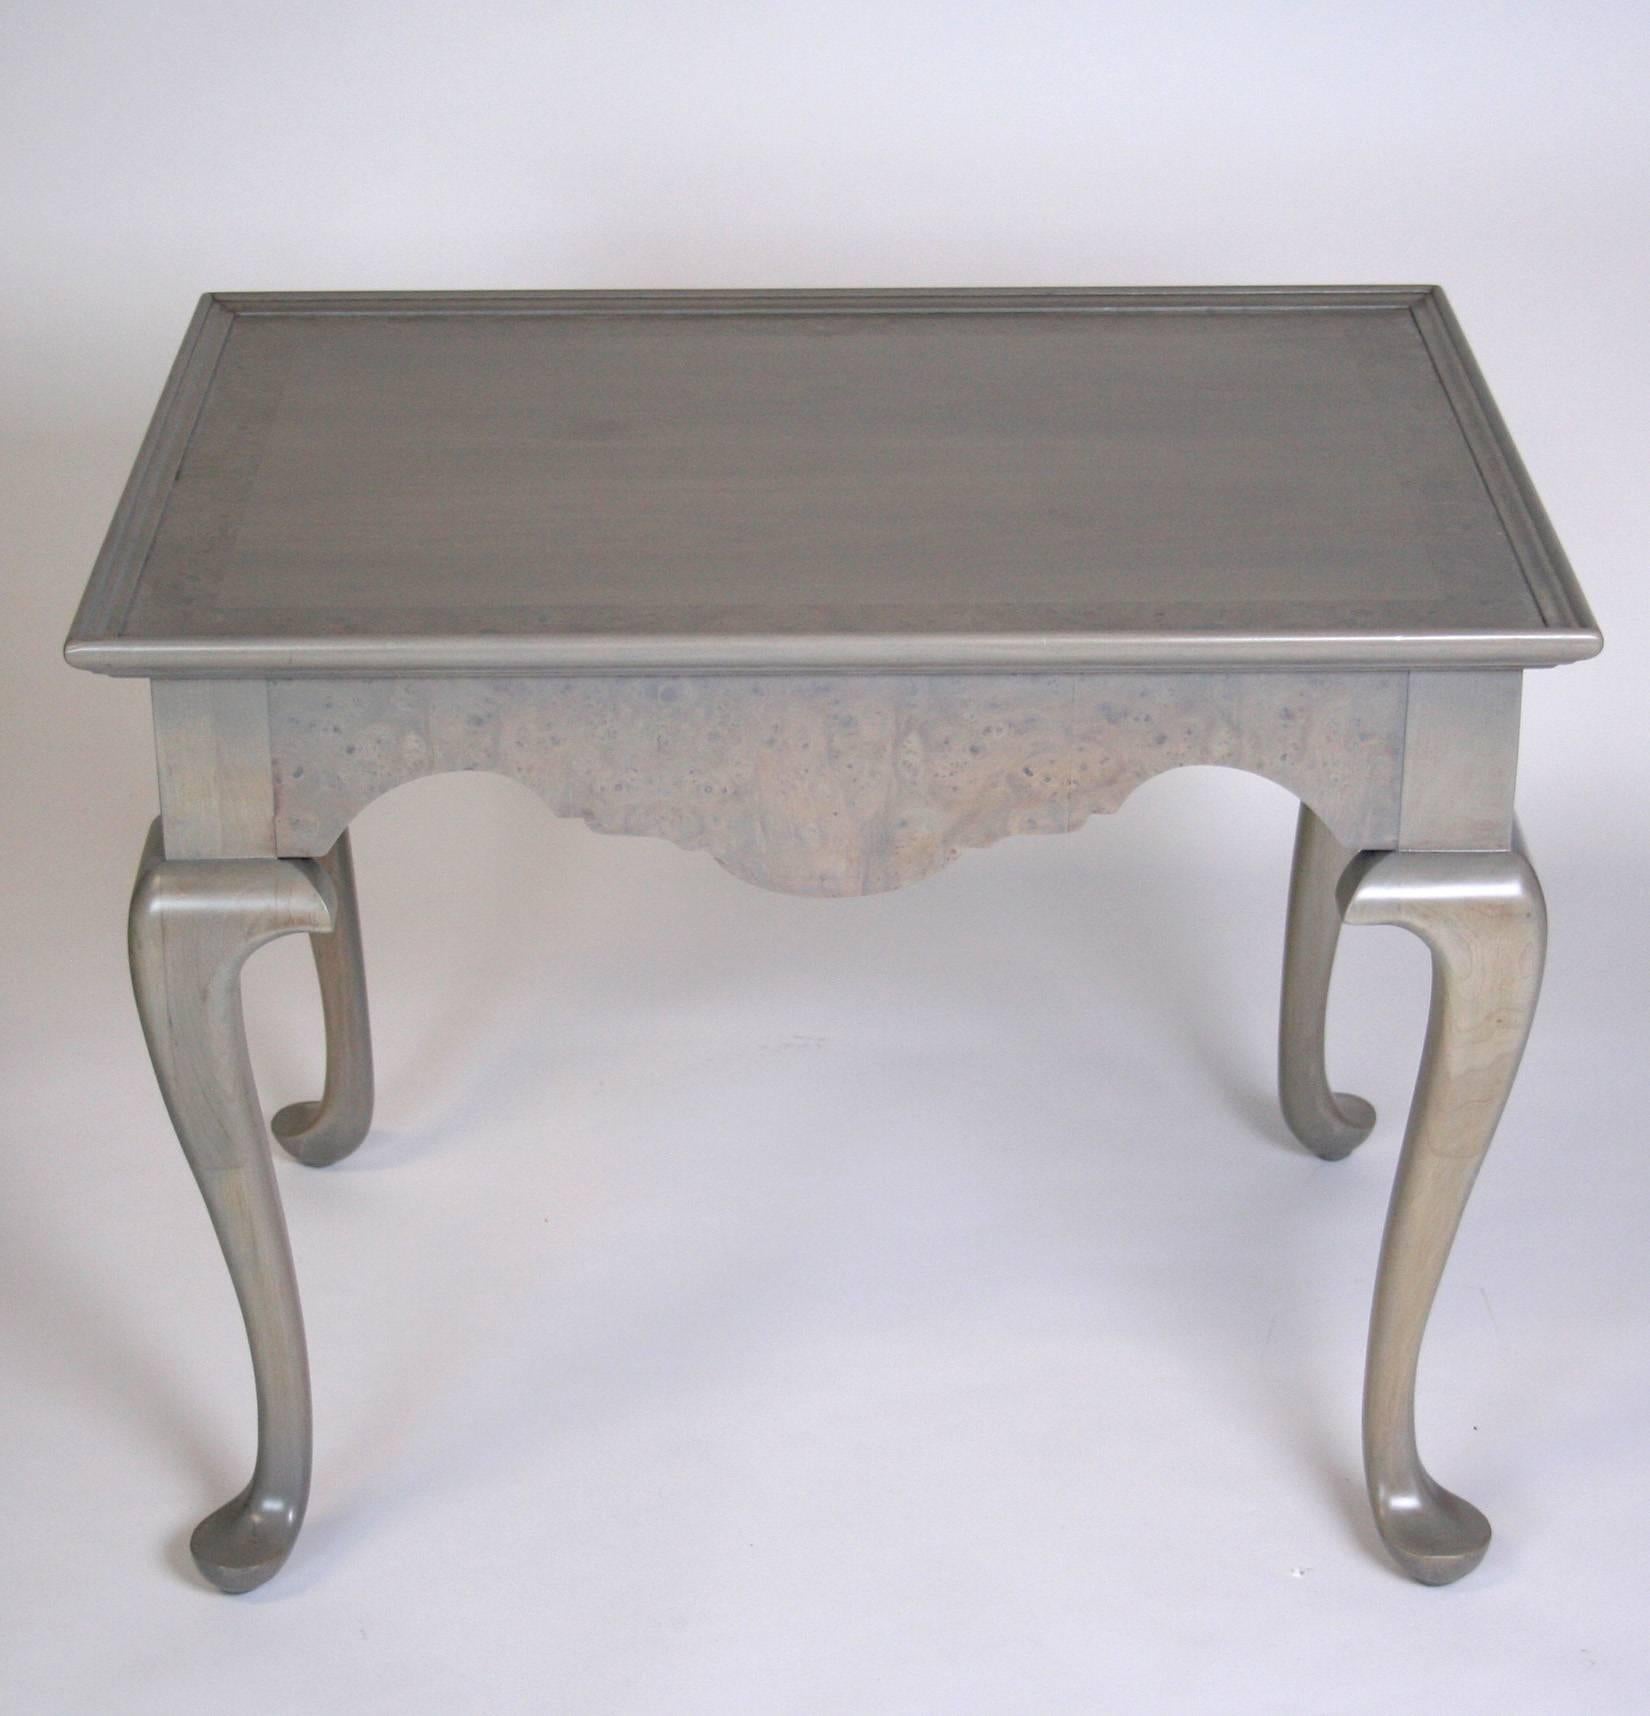 Une paire de tables d'appoint dans le style Queen Anne par Fine Arts Furniture. Le tablier festonné est en placage de ronce, tandis que le plateau de style try a une bordure de ronce. Refini dans une teinture gris argenté.